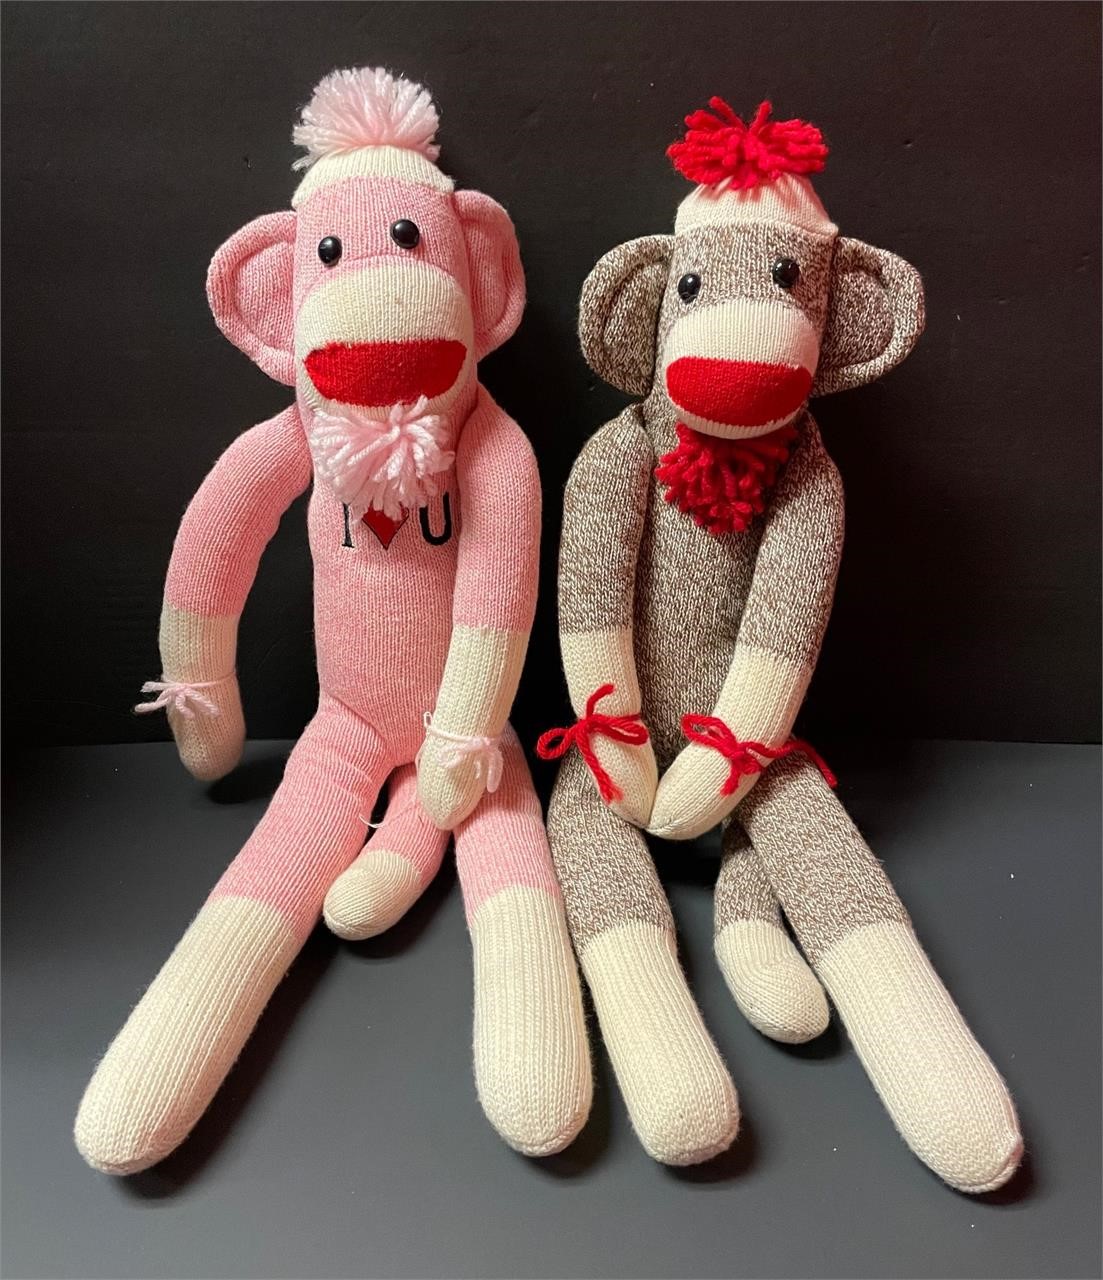 2 20” Sock Monkeys